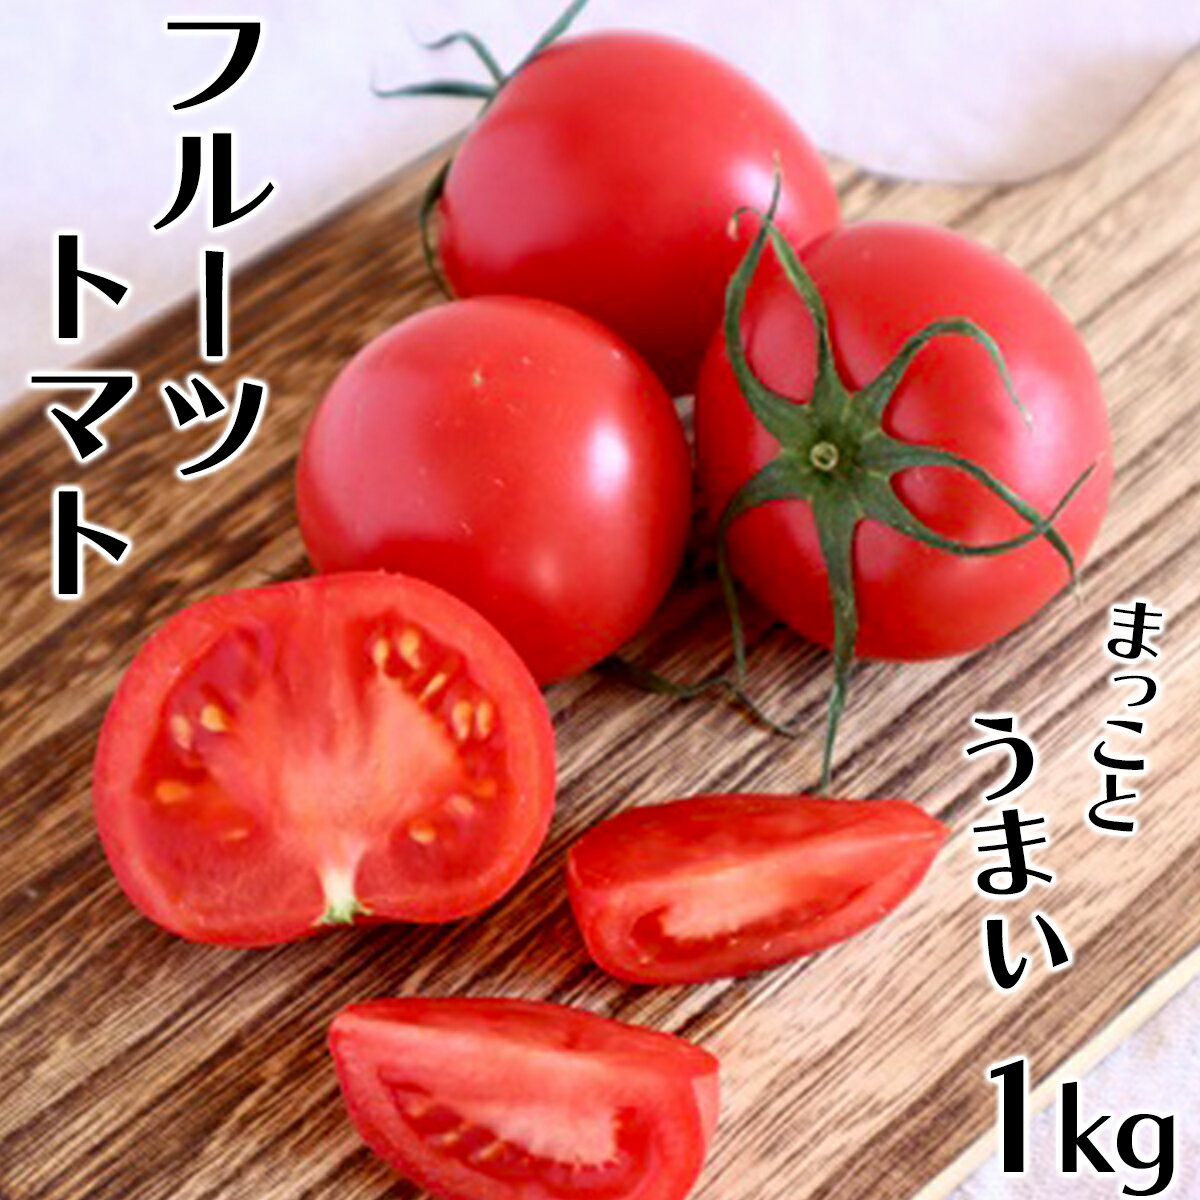 まっことうまい!水田さんのフルーツトマト 約1kg